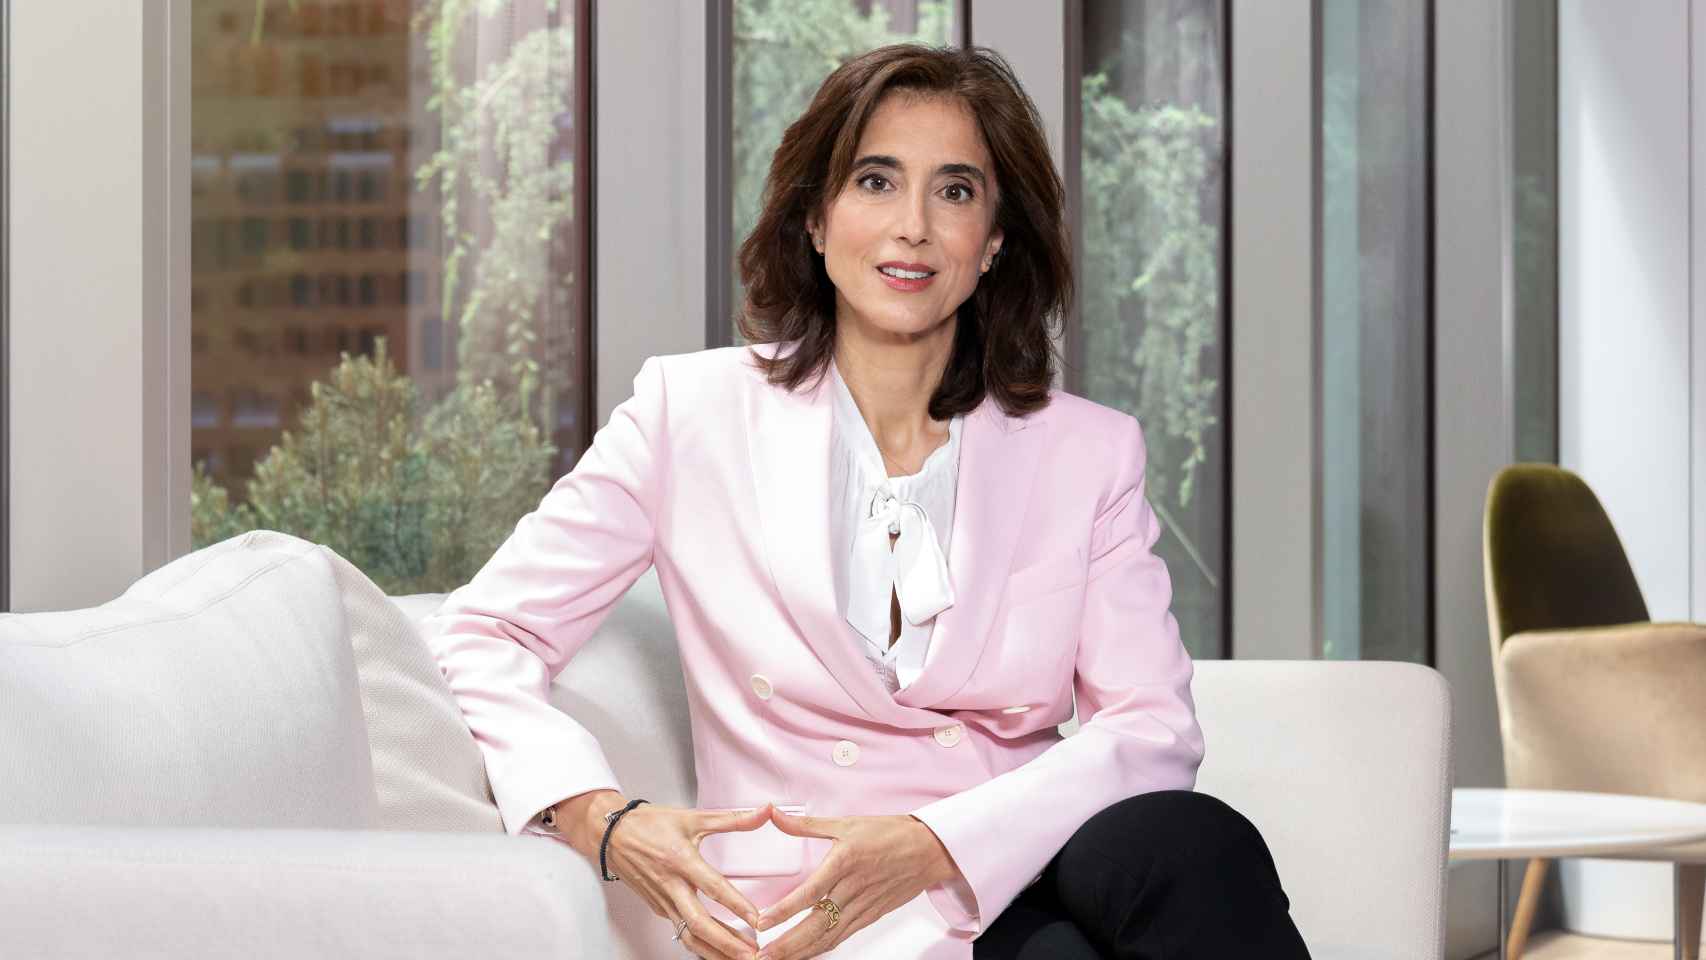 Pilar López, VP de Microsoft, sentada en un sofá